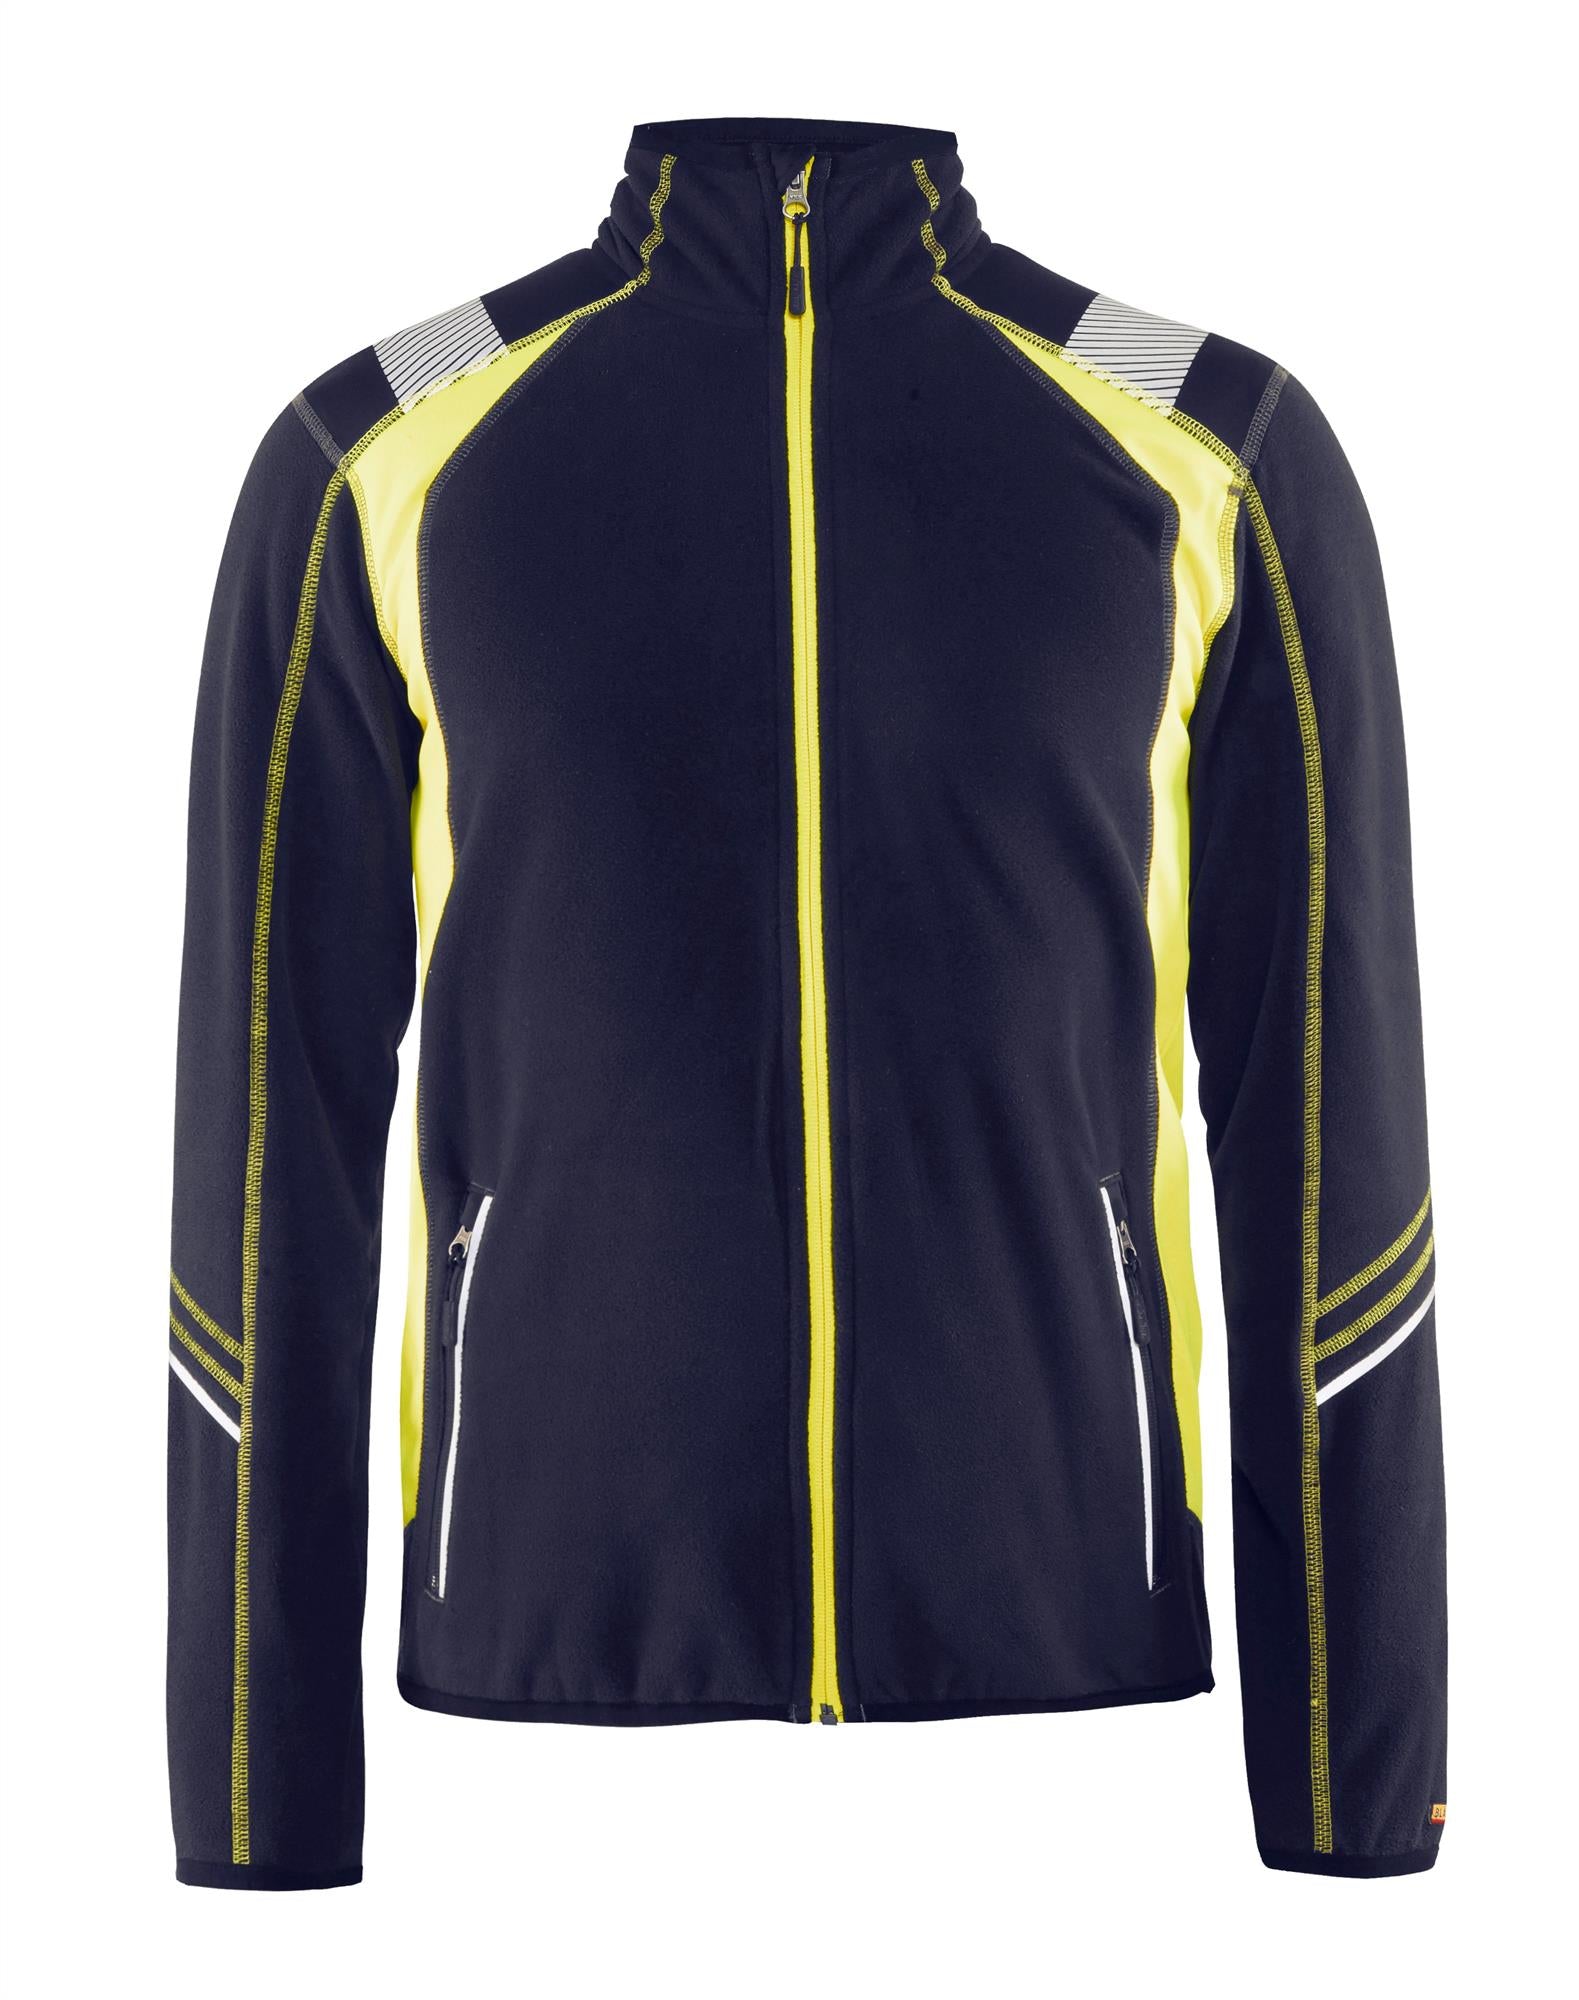 Blaklader navy/yellow women's full-zip microfleece jacket #4973